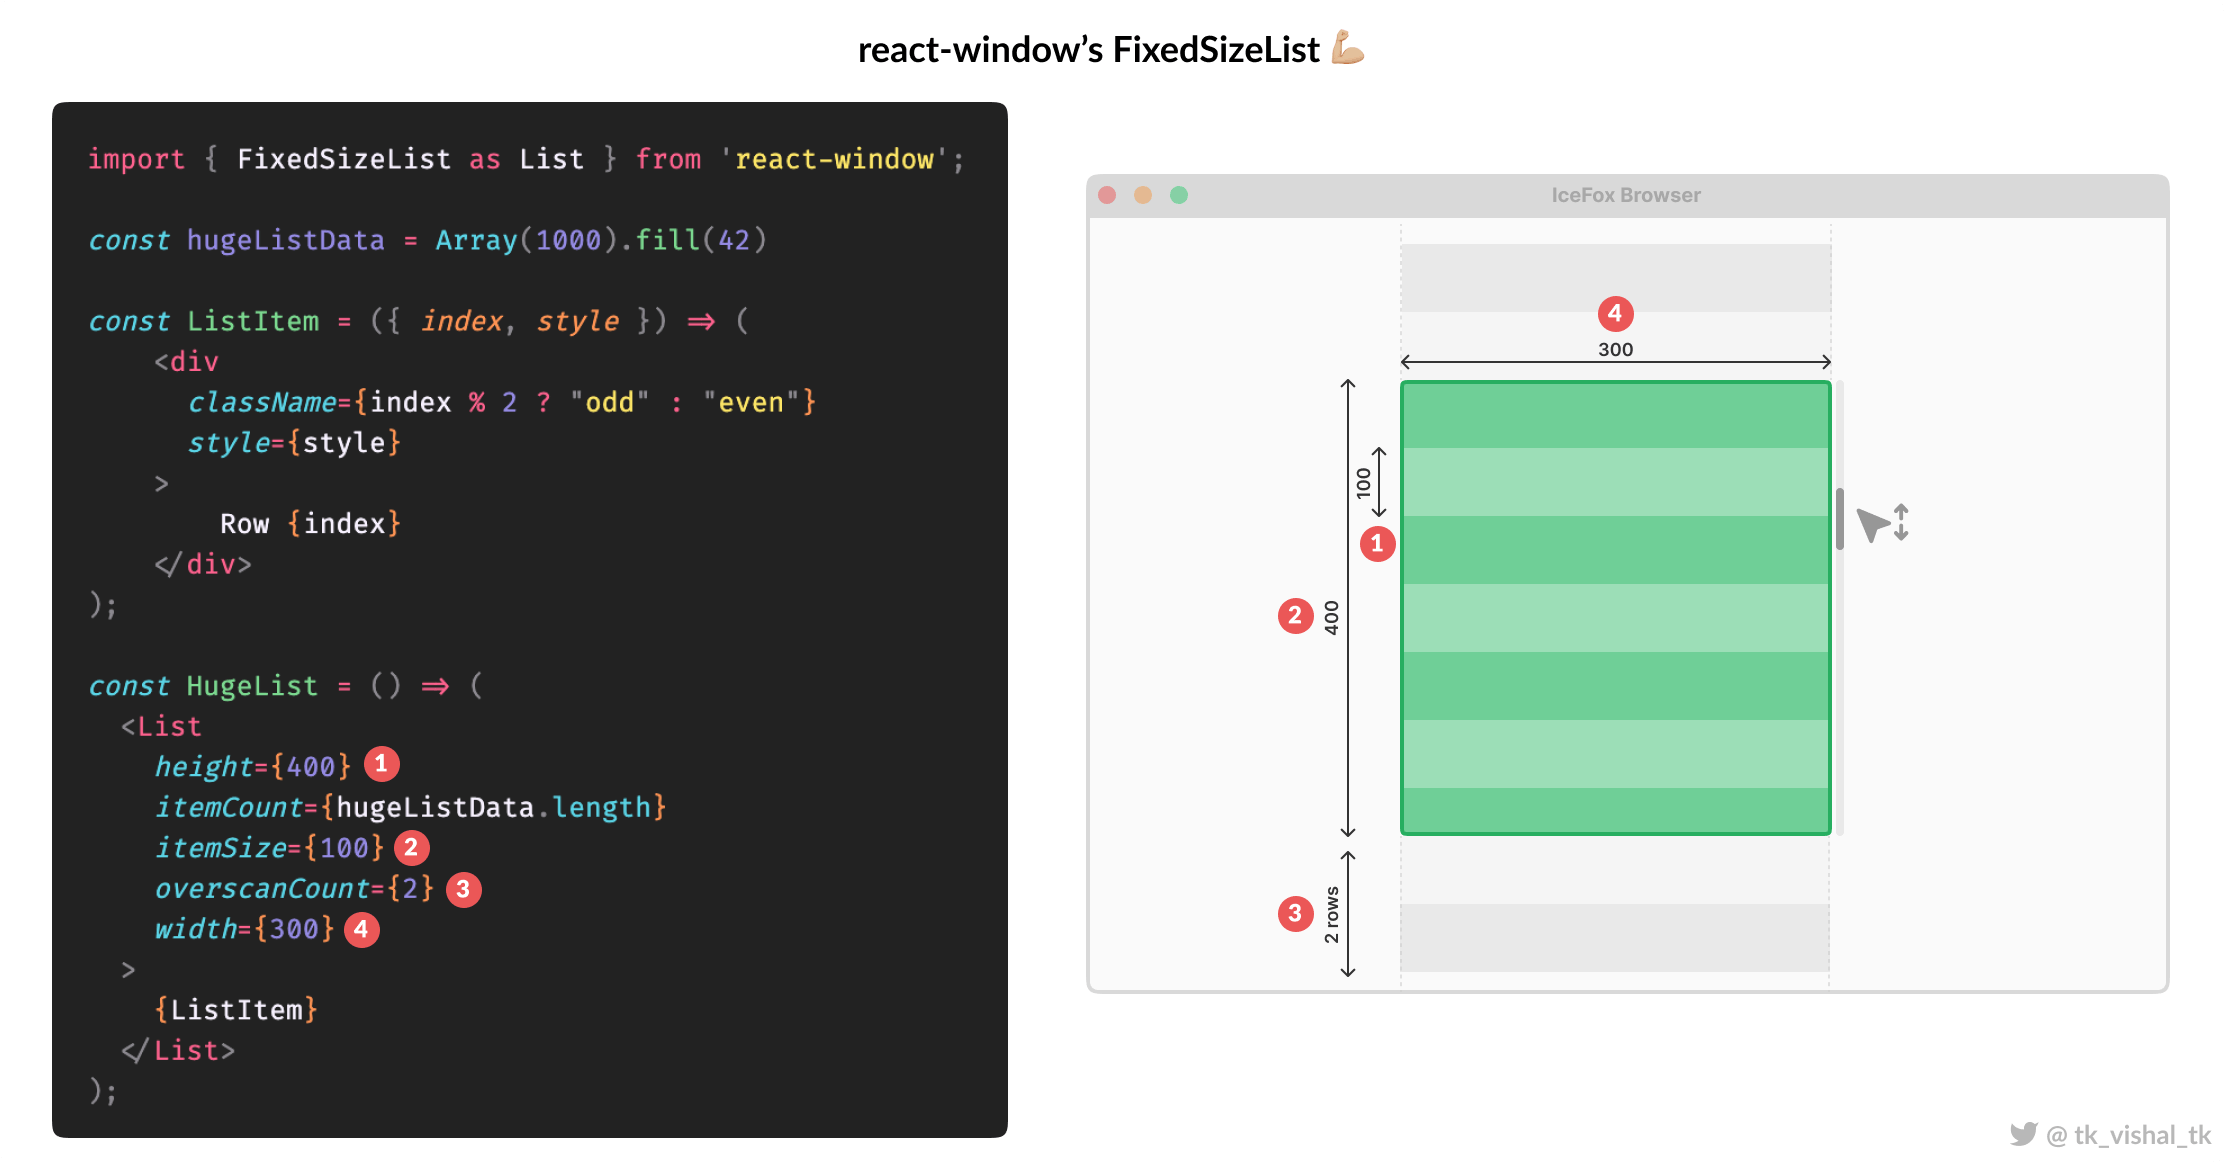 Illustrating react-window FixedSizeList API